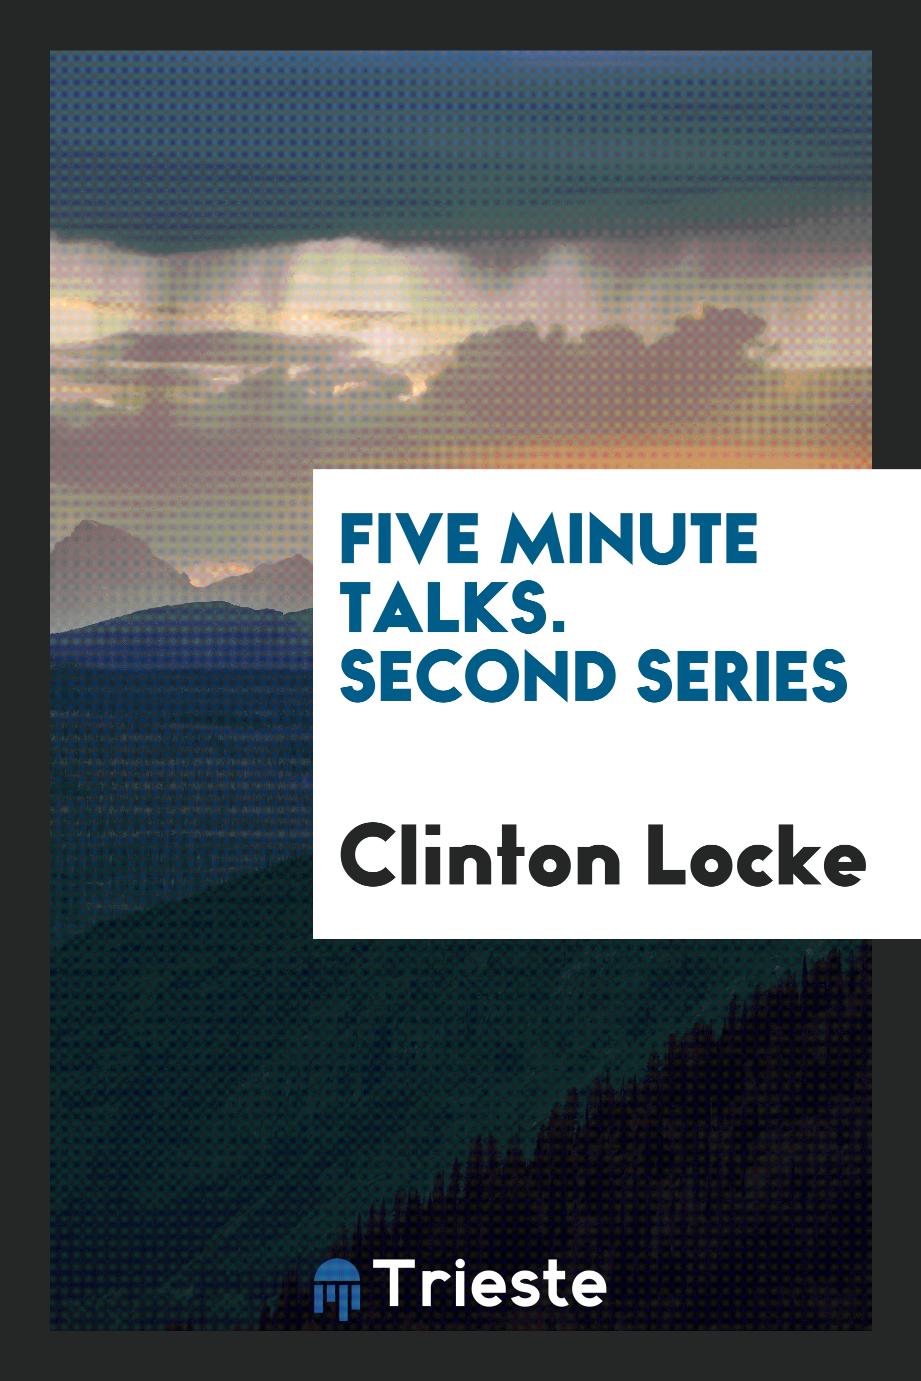 Five minute talks. Second series